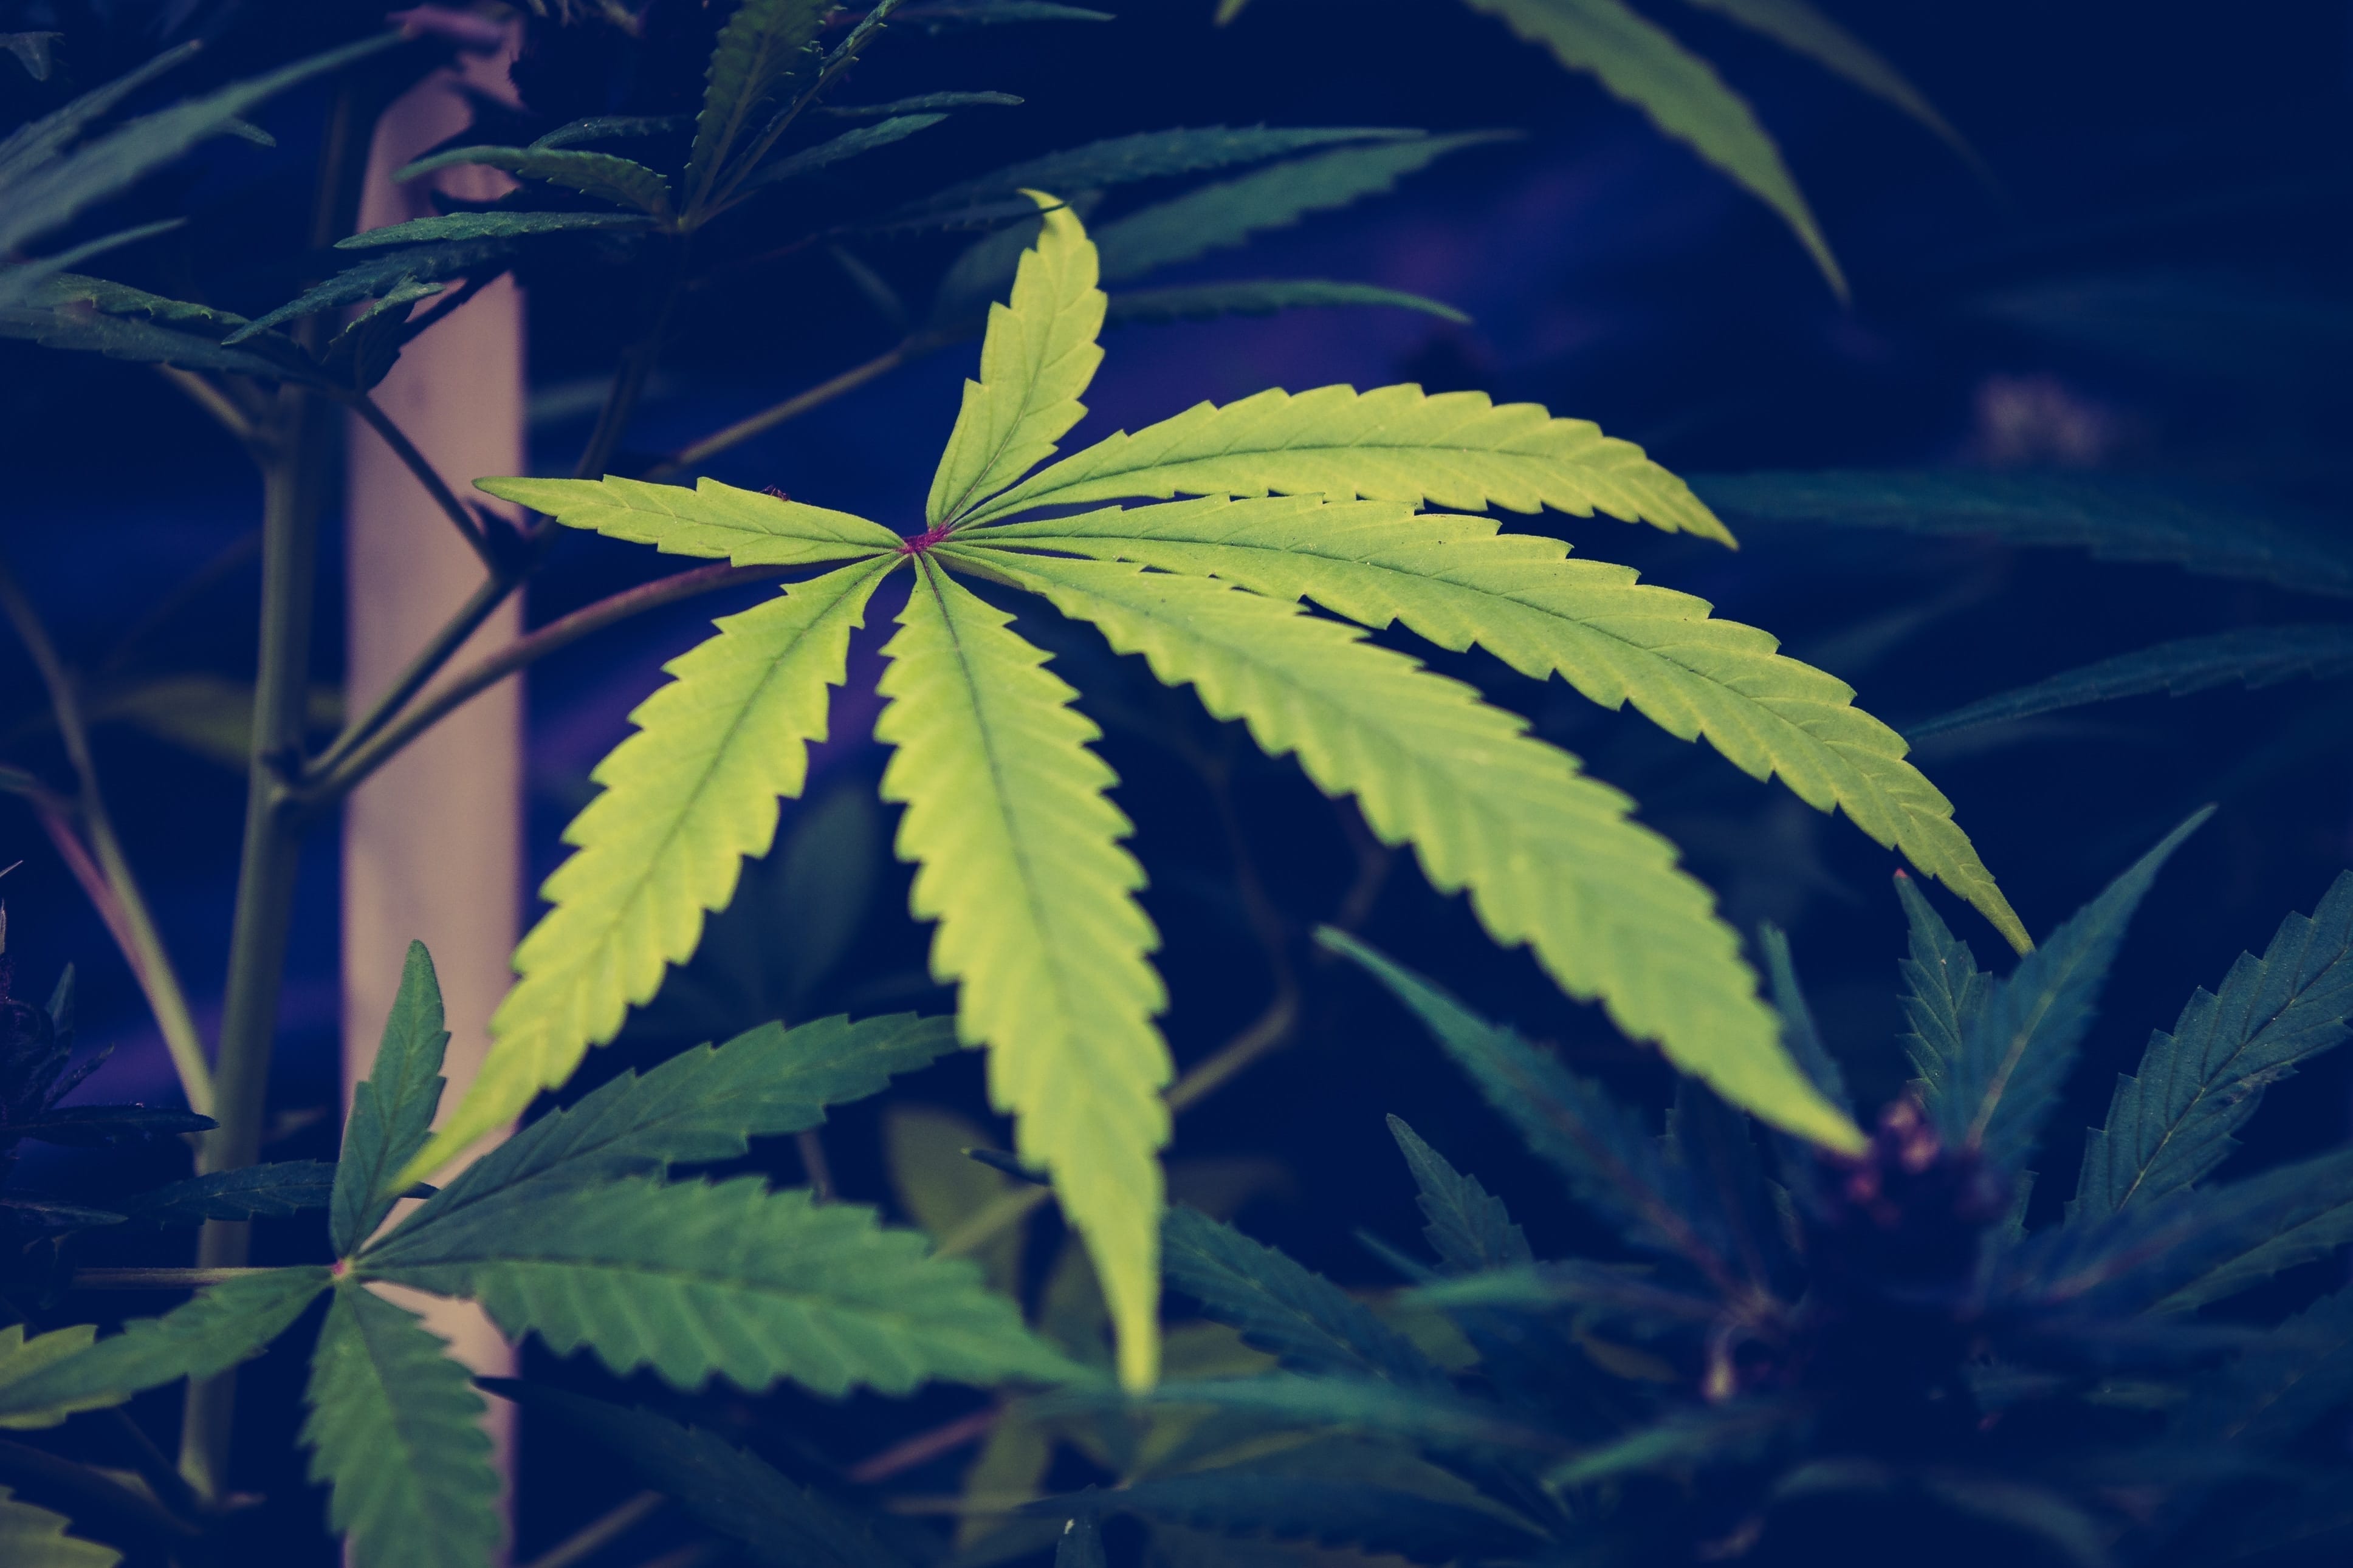 Michigan's Marijuana Dispensaries May Be Forced to Close Their Doors